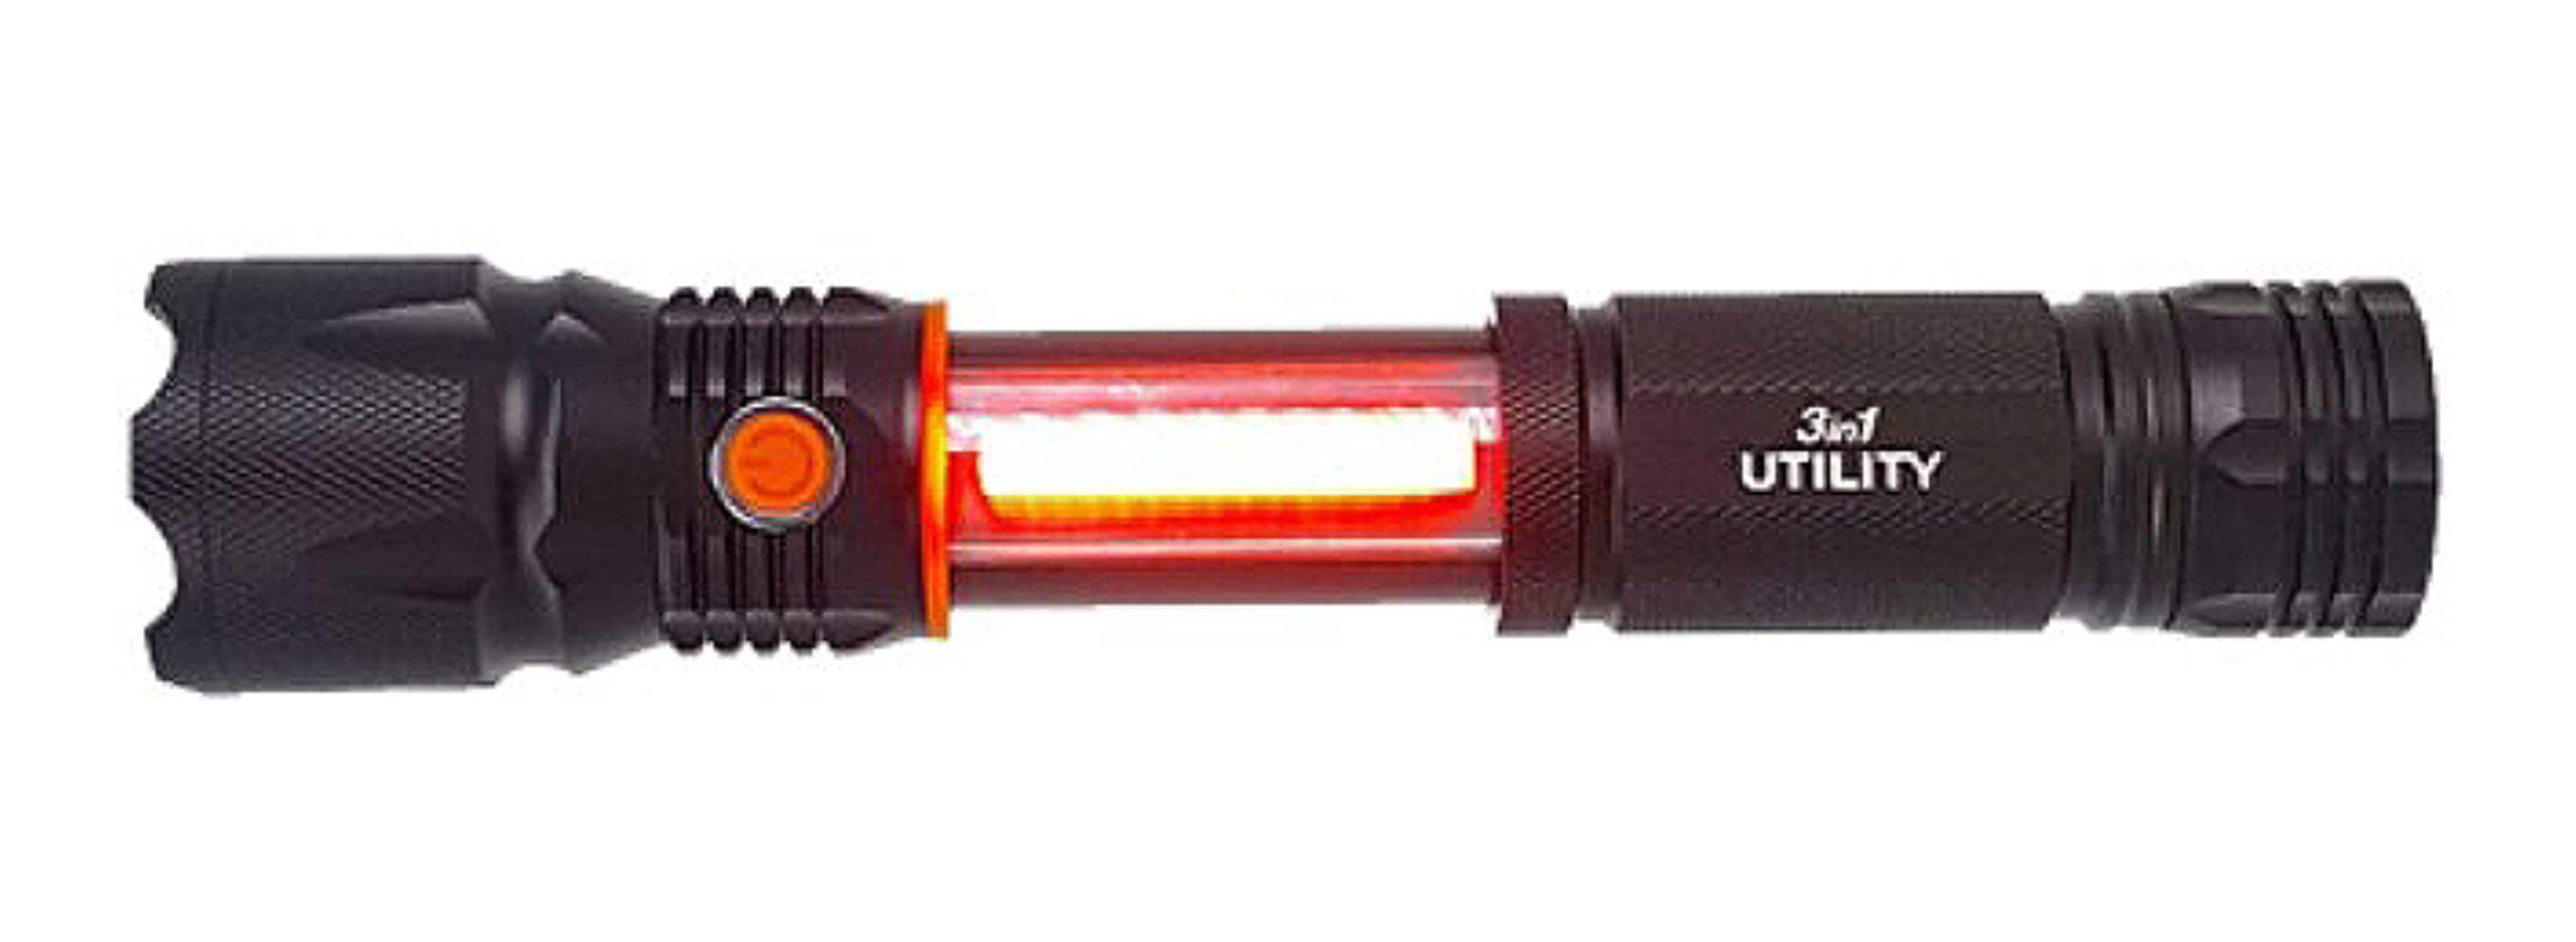 1TAC Ultra Power Pro Lantern Pop Up Lantern 500-Lumen LED Camping